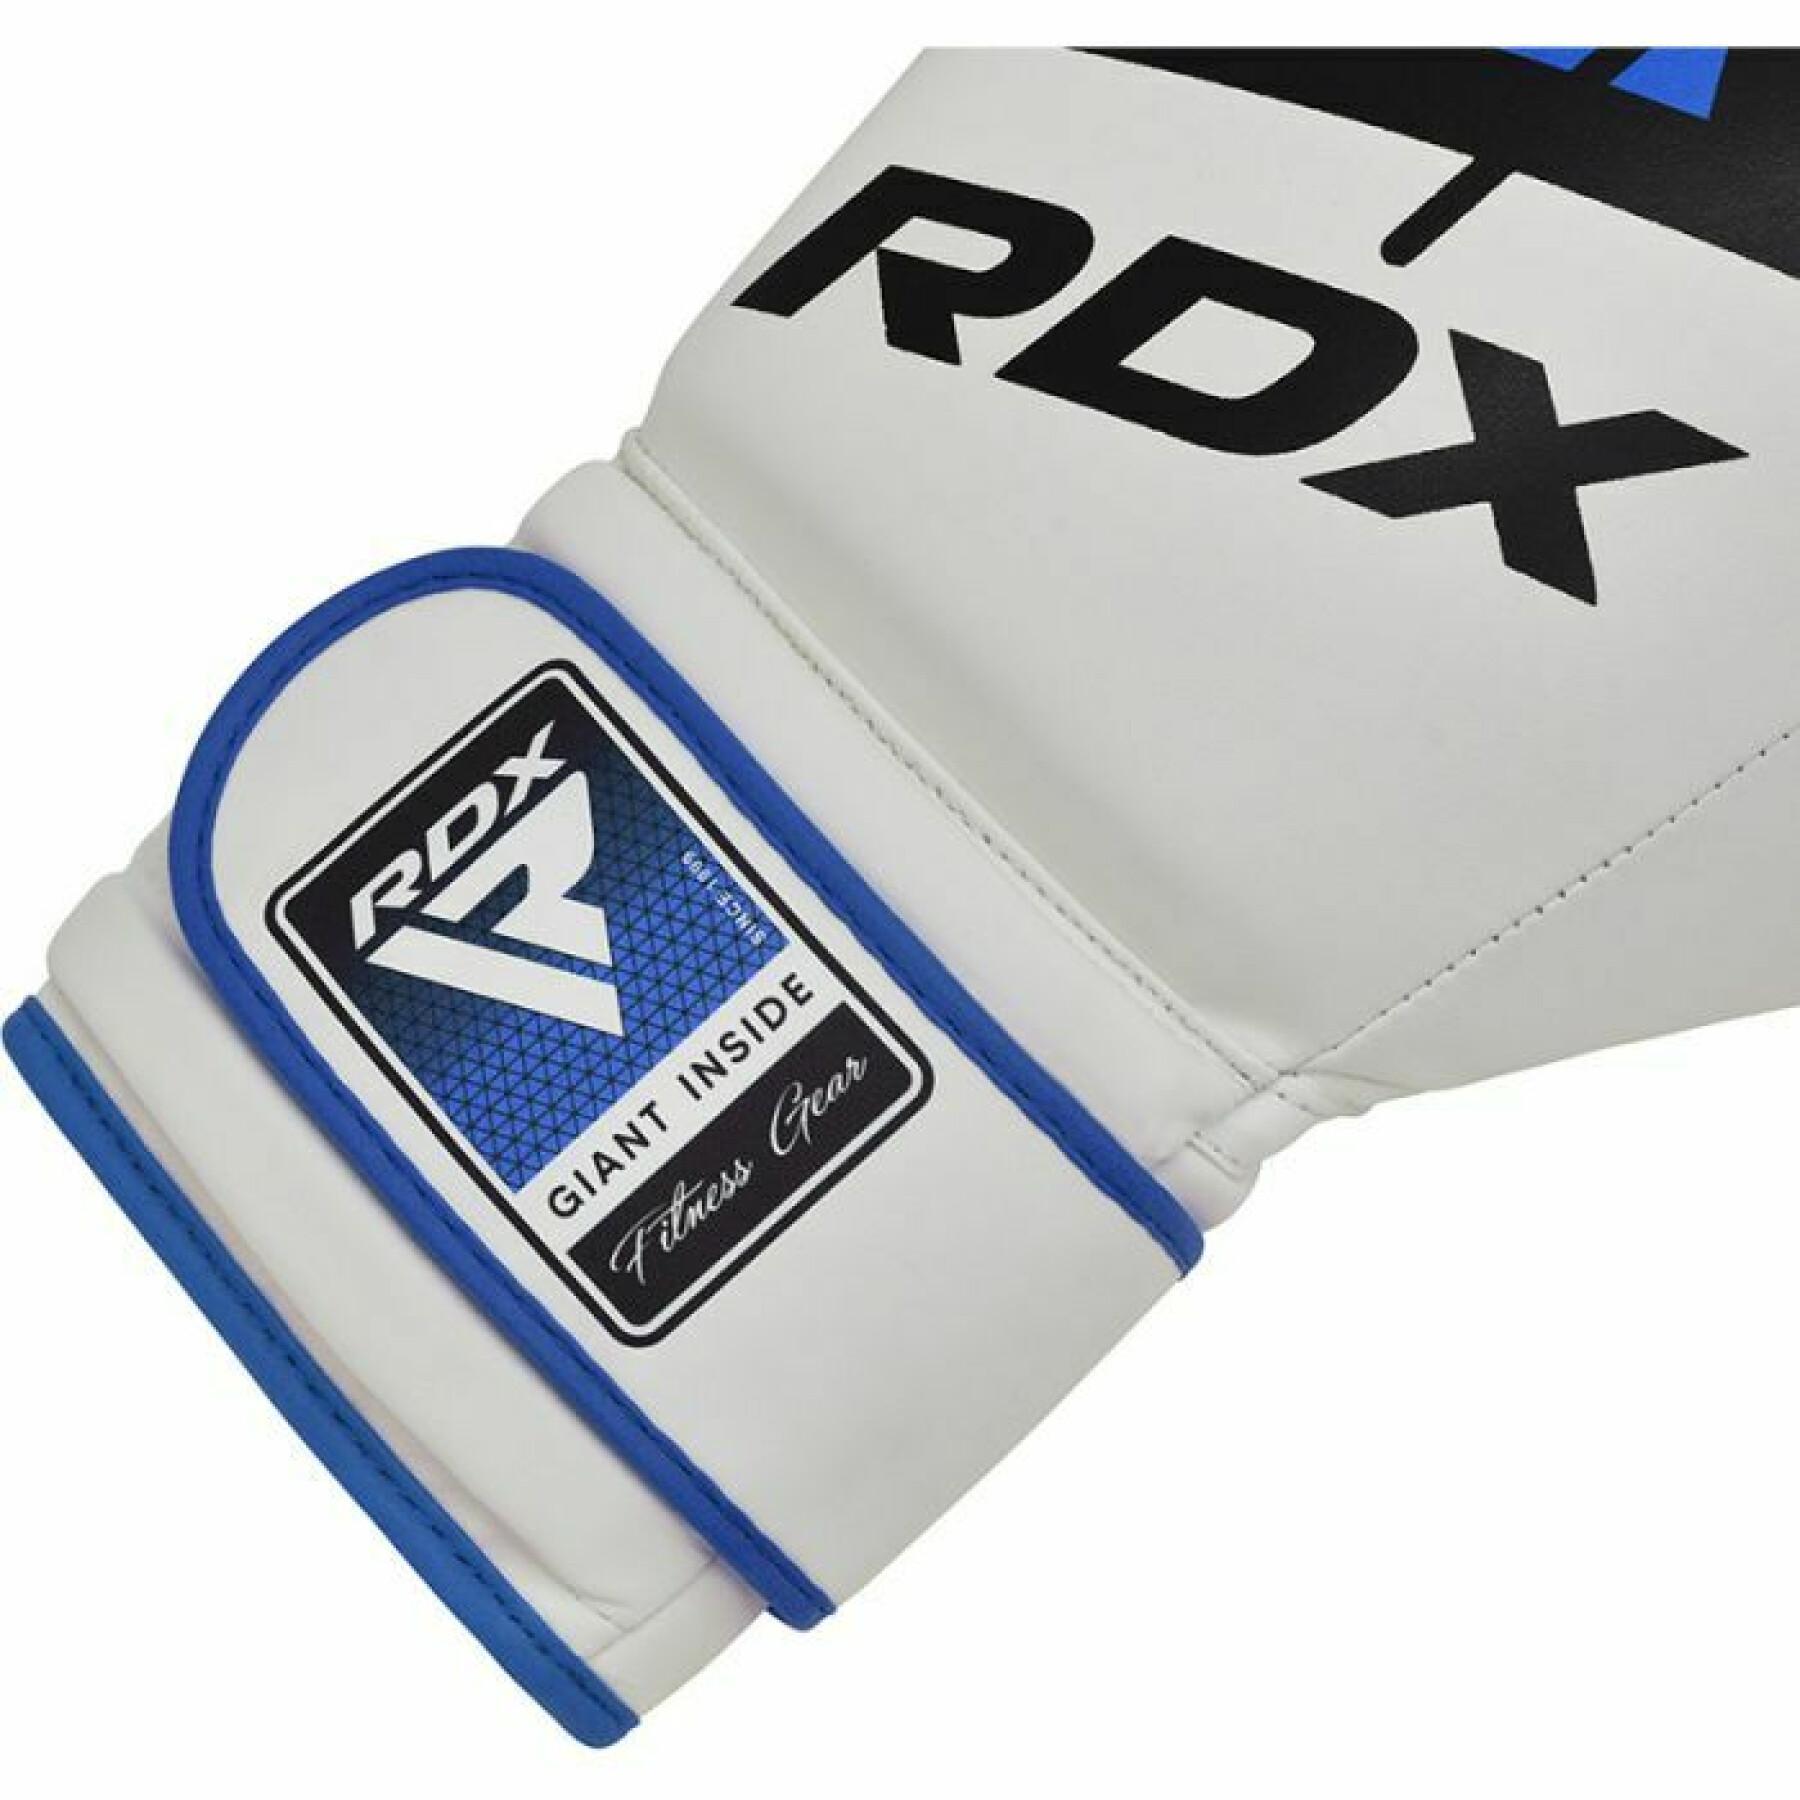 Rękawice bokserskie RDX F7 Ego